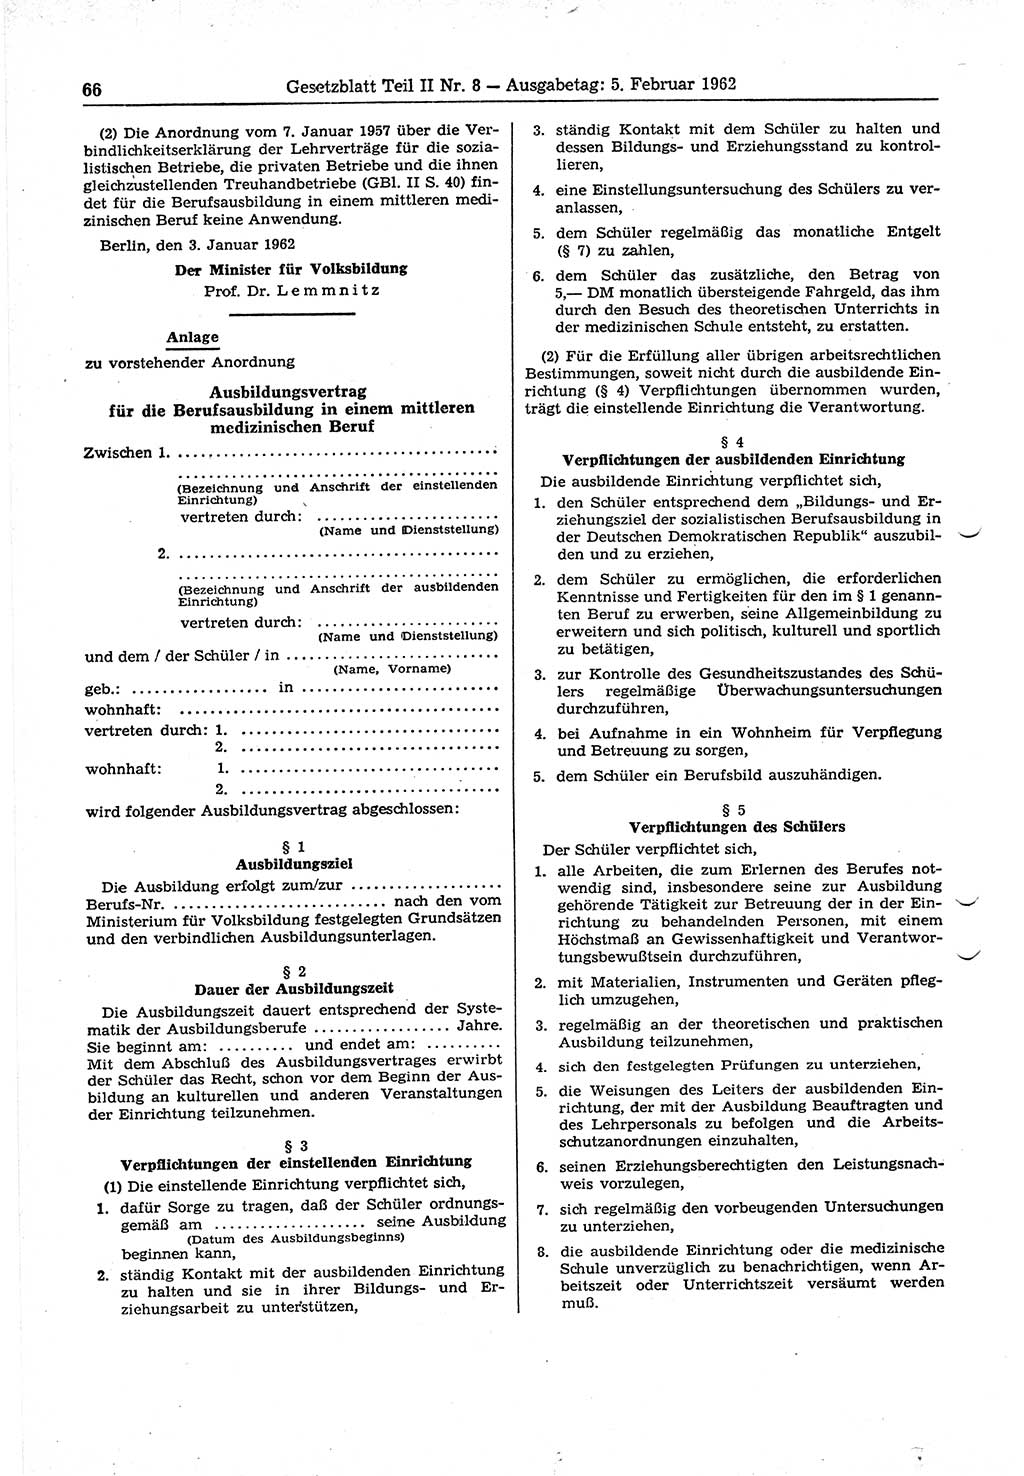 Gesetzblatt (GBl.) der Deutschen Demokratischen Republik (DDR) Teil ⅠⅠ 1962, Seite 66 (GBl. DDR ⅠⅠ 1962, S. 66)